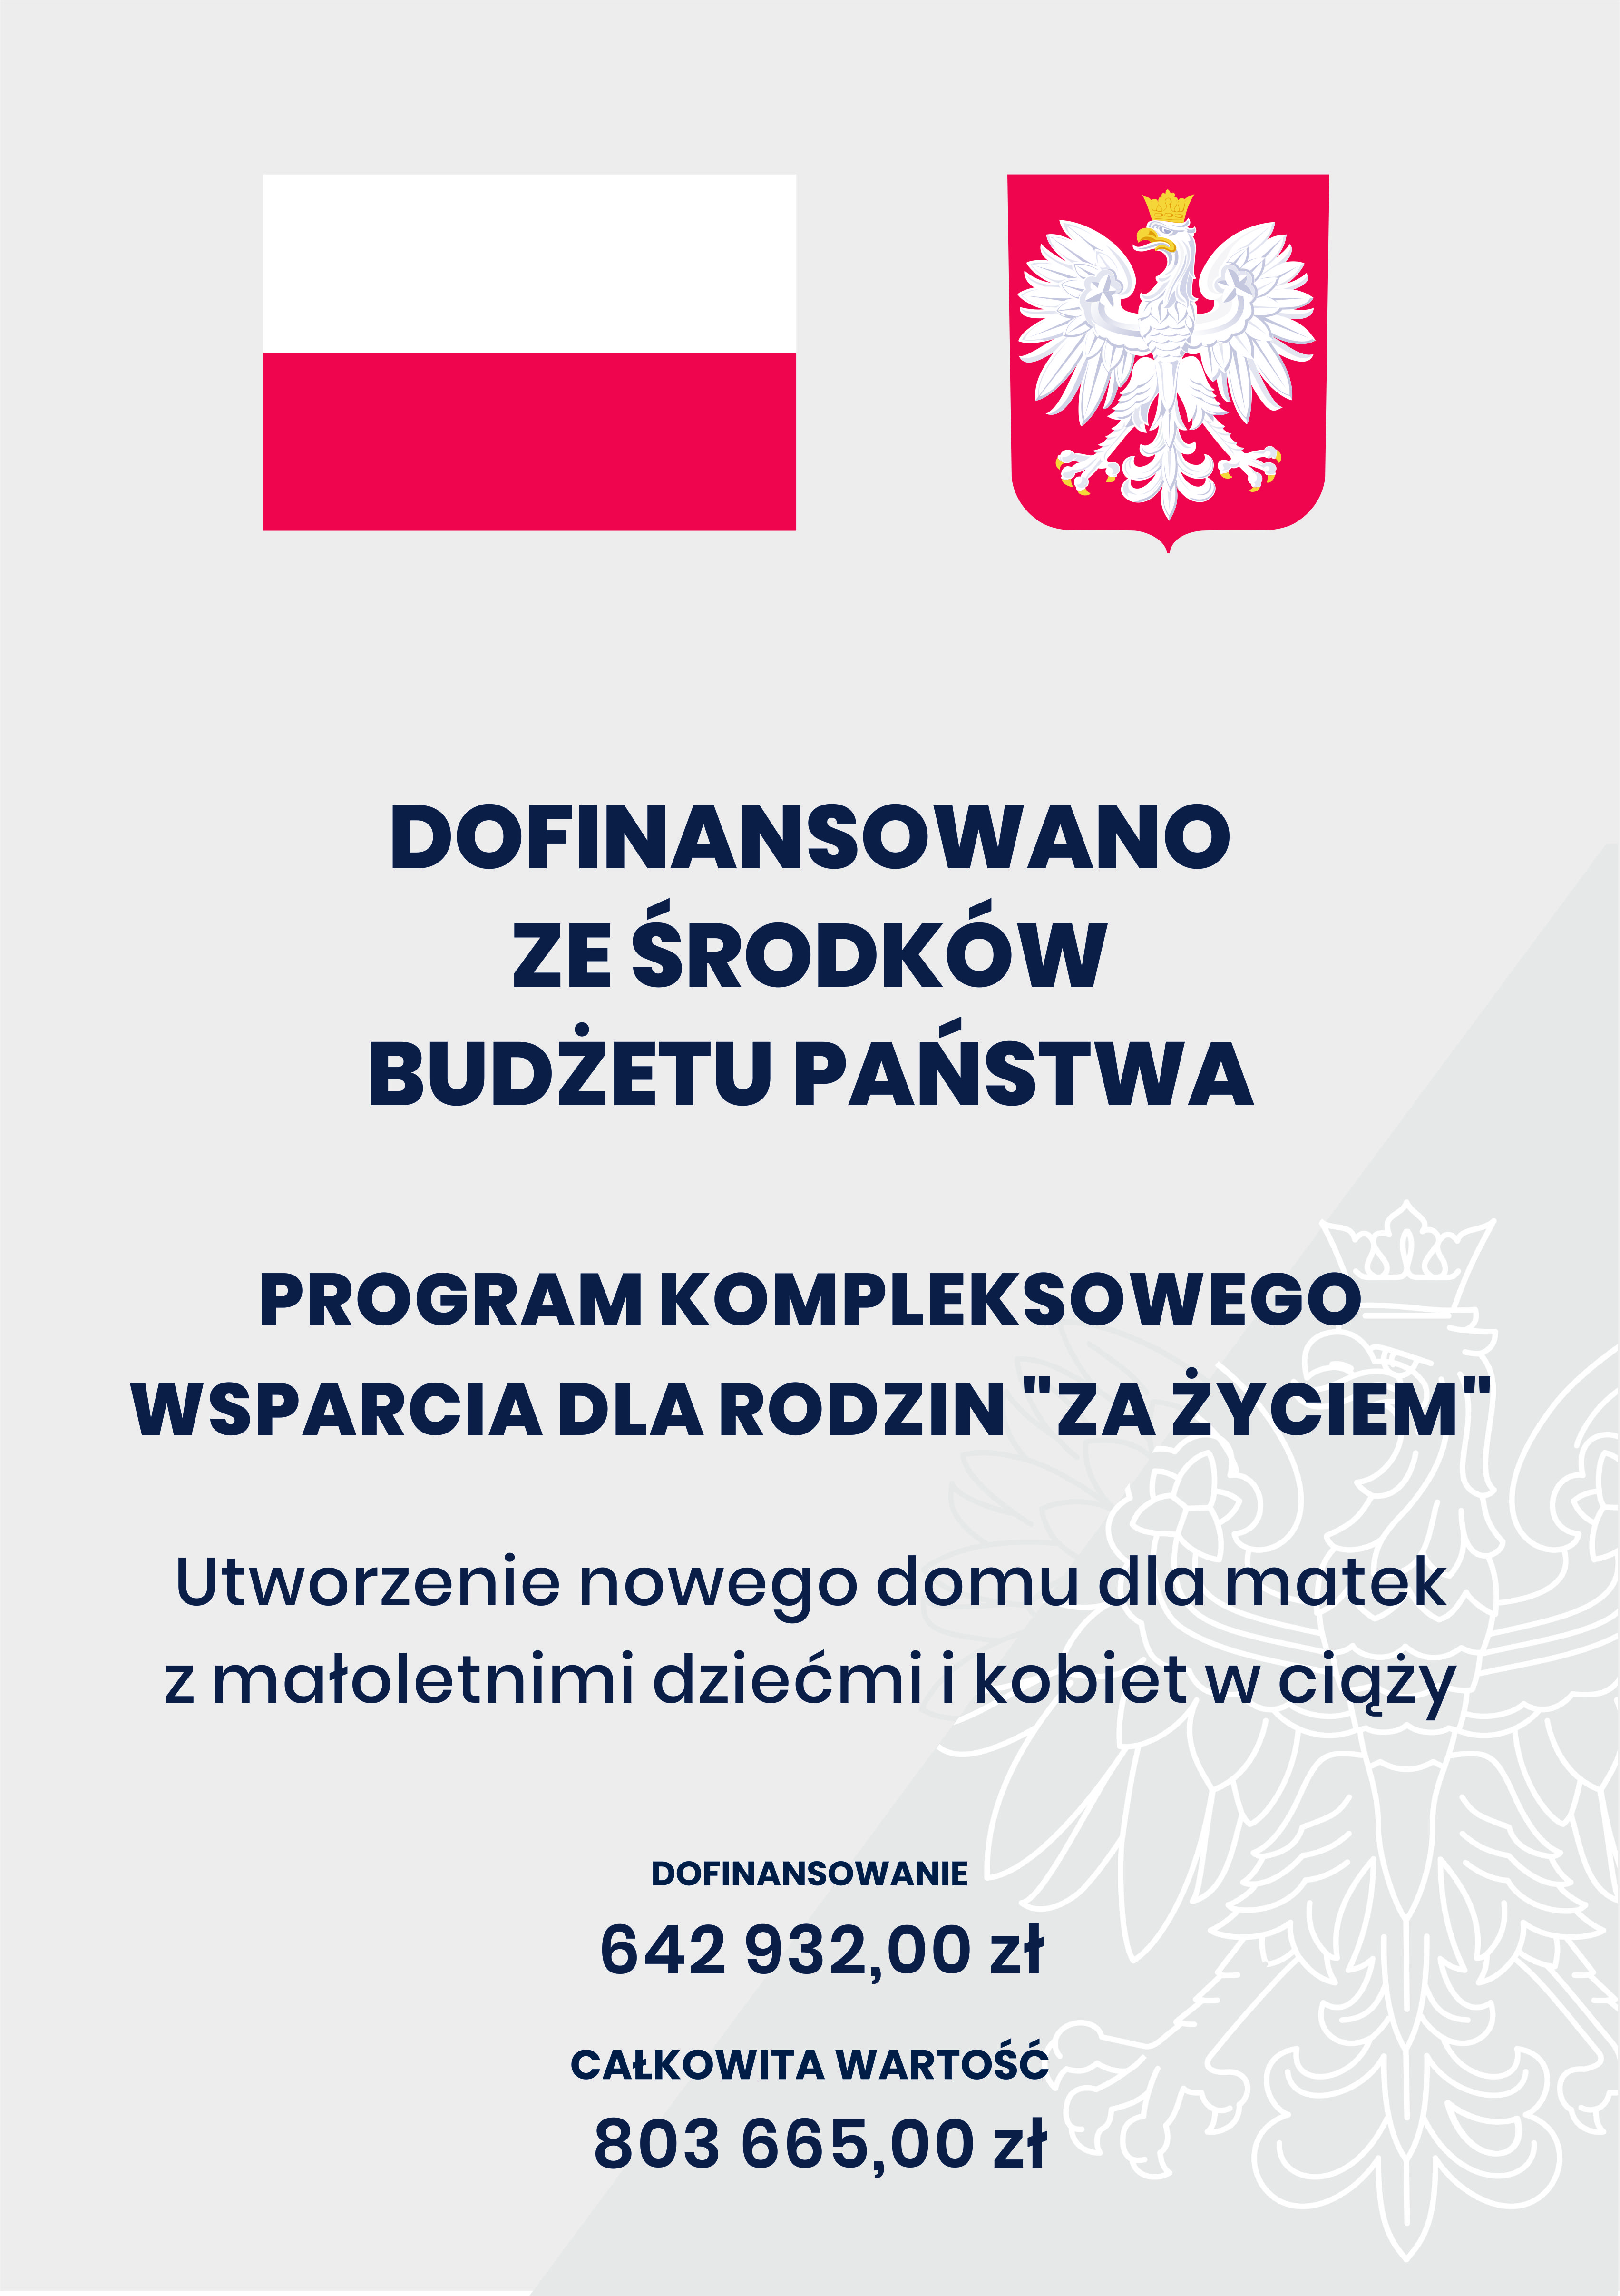 godło flaga Polski na szarynm tle oraz tekst